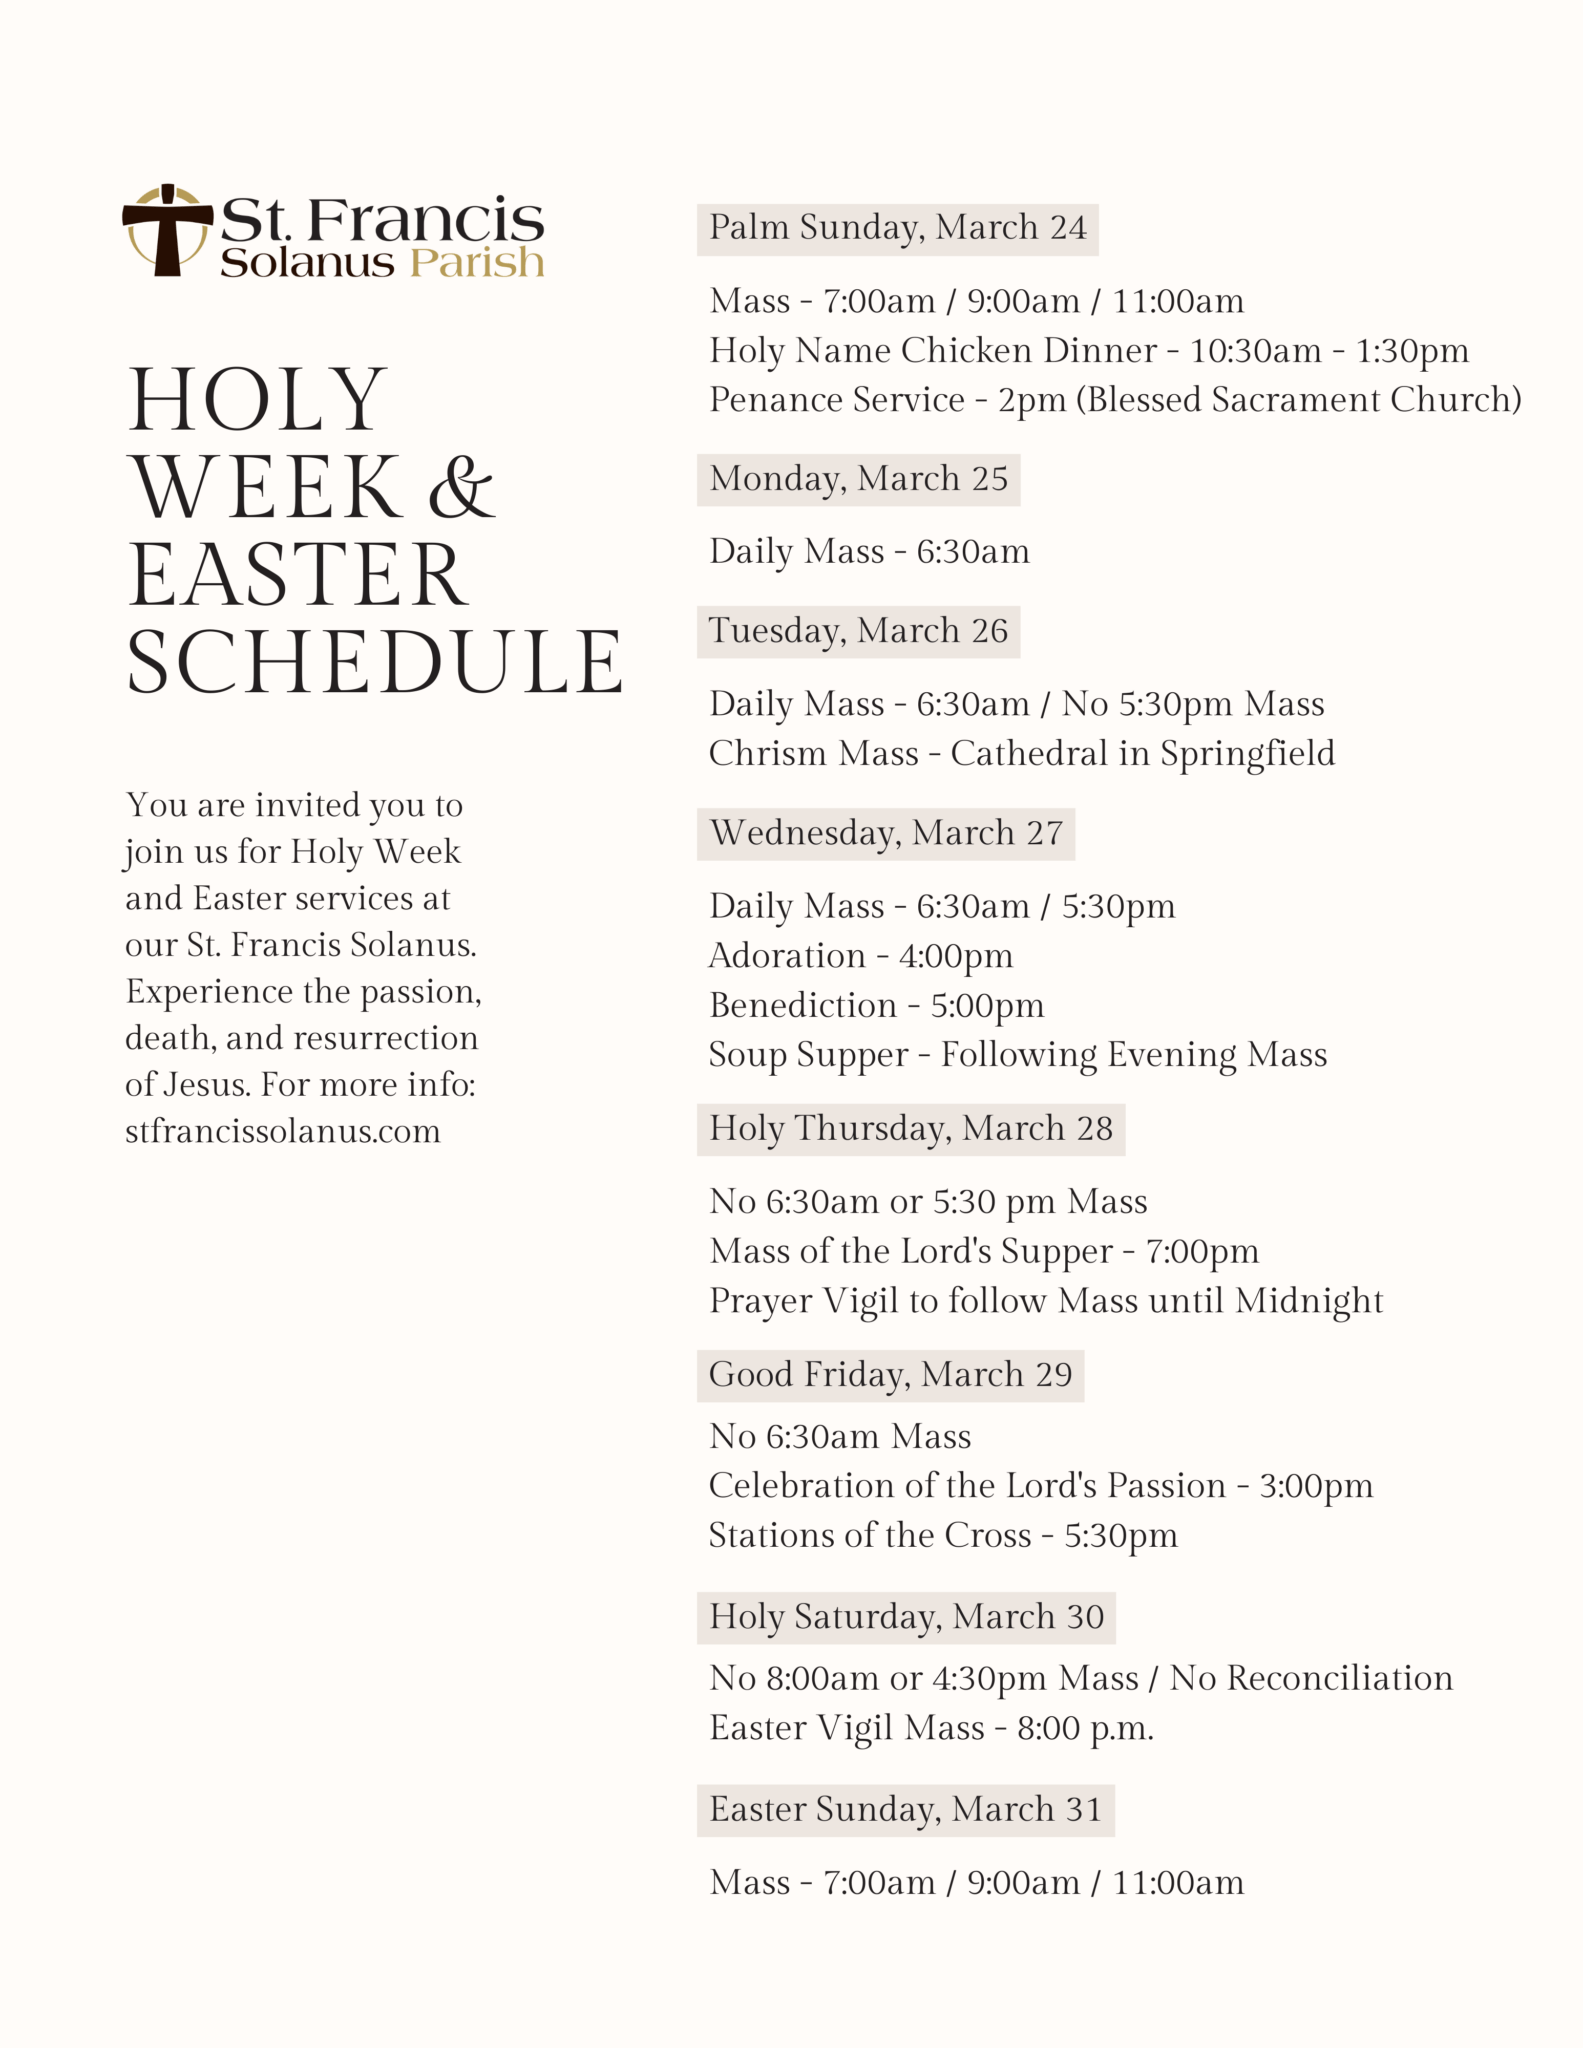 holy-week-easter-schedule-revised